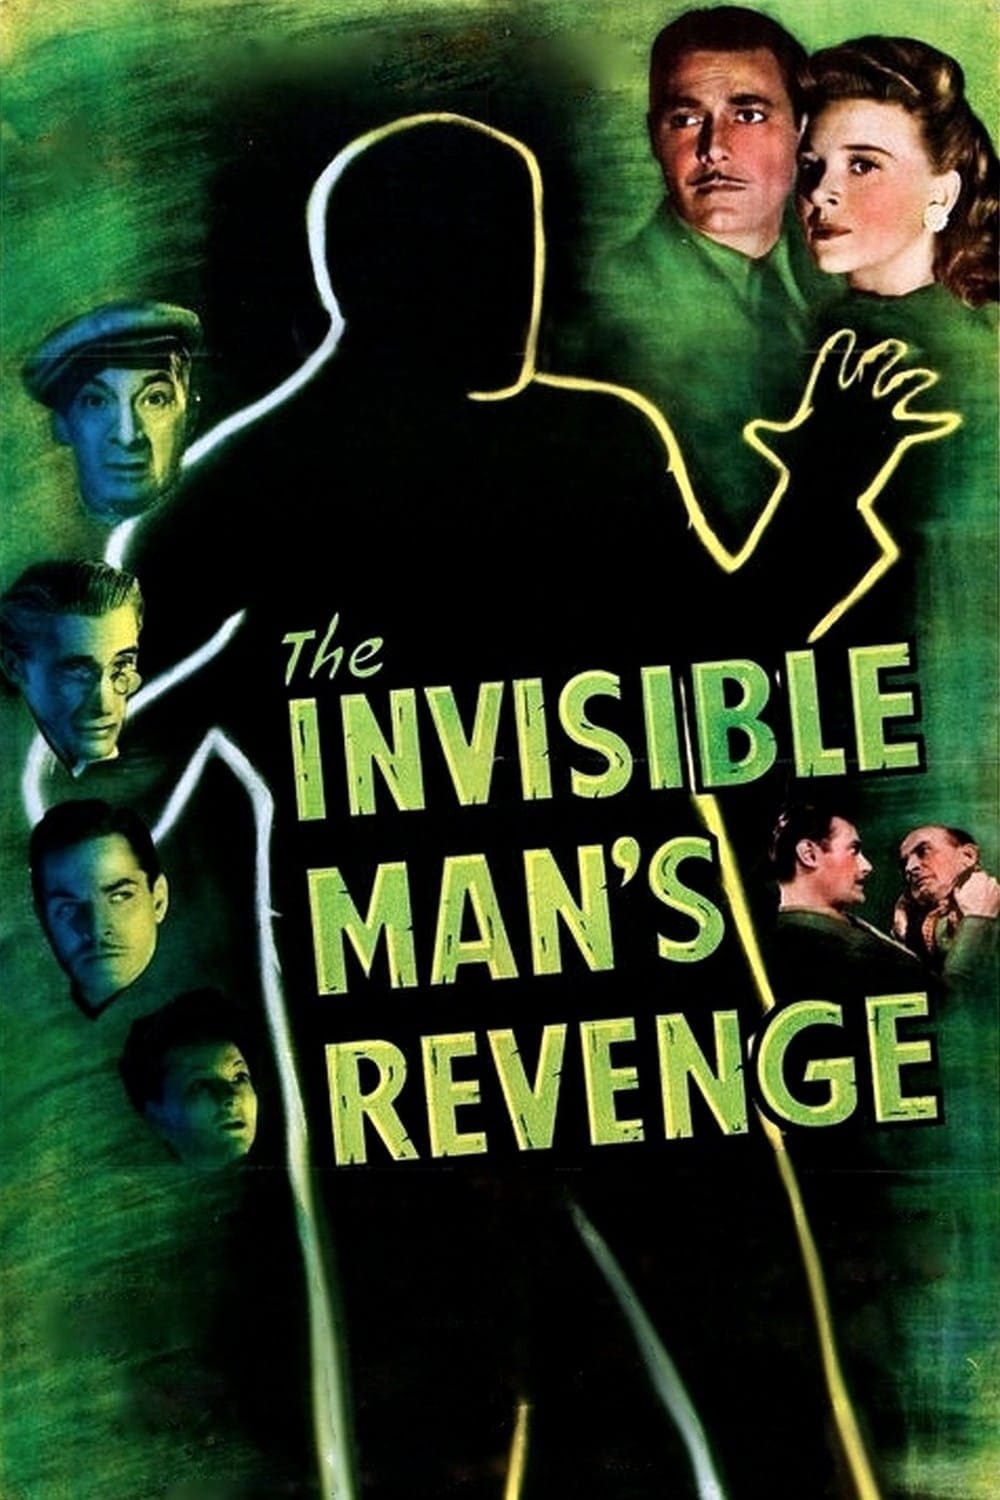 Der Unsichtbare nimmt Rache (1944)